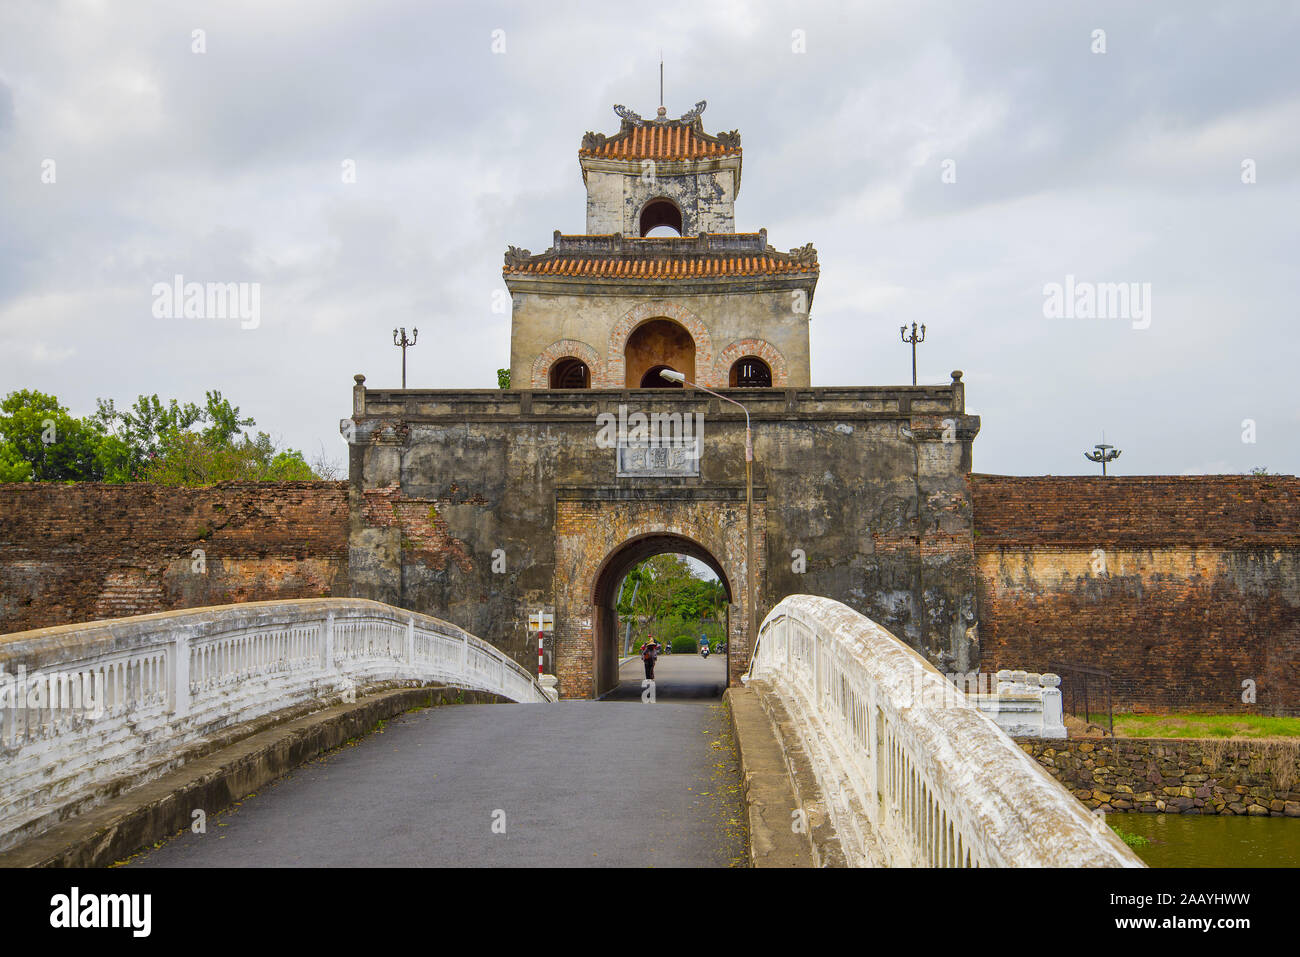 Antica porta della città vecchia closeup in un giorno nuvoloso. La cittadella di Hue Citadel, Vietnam Foto Stock